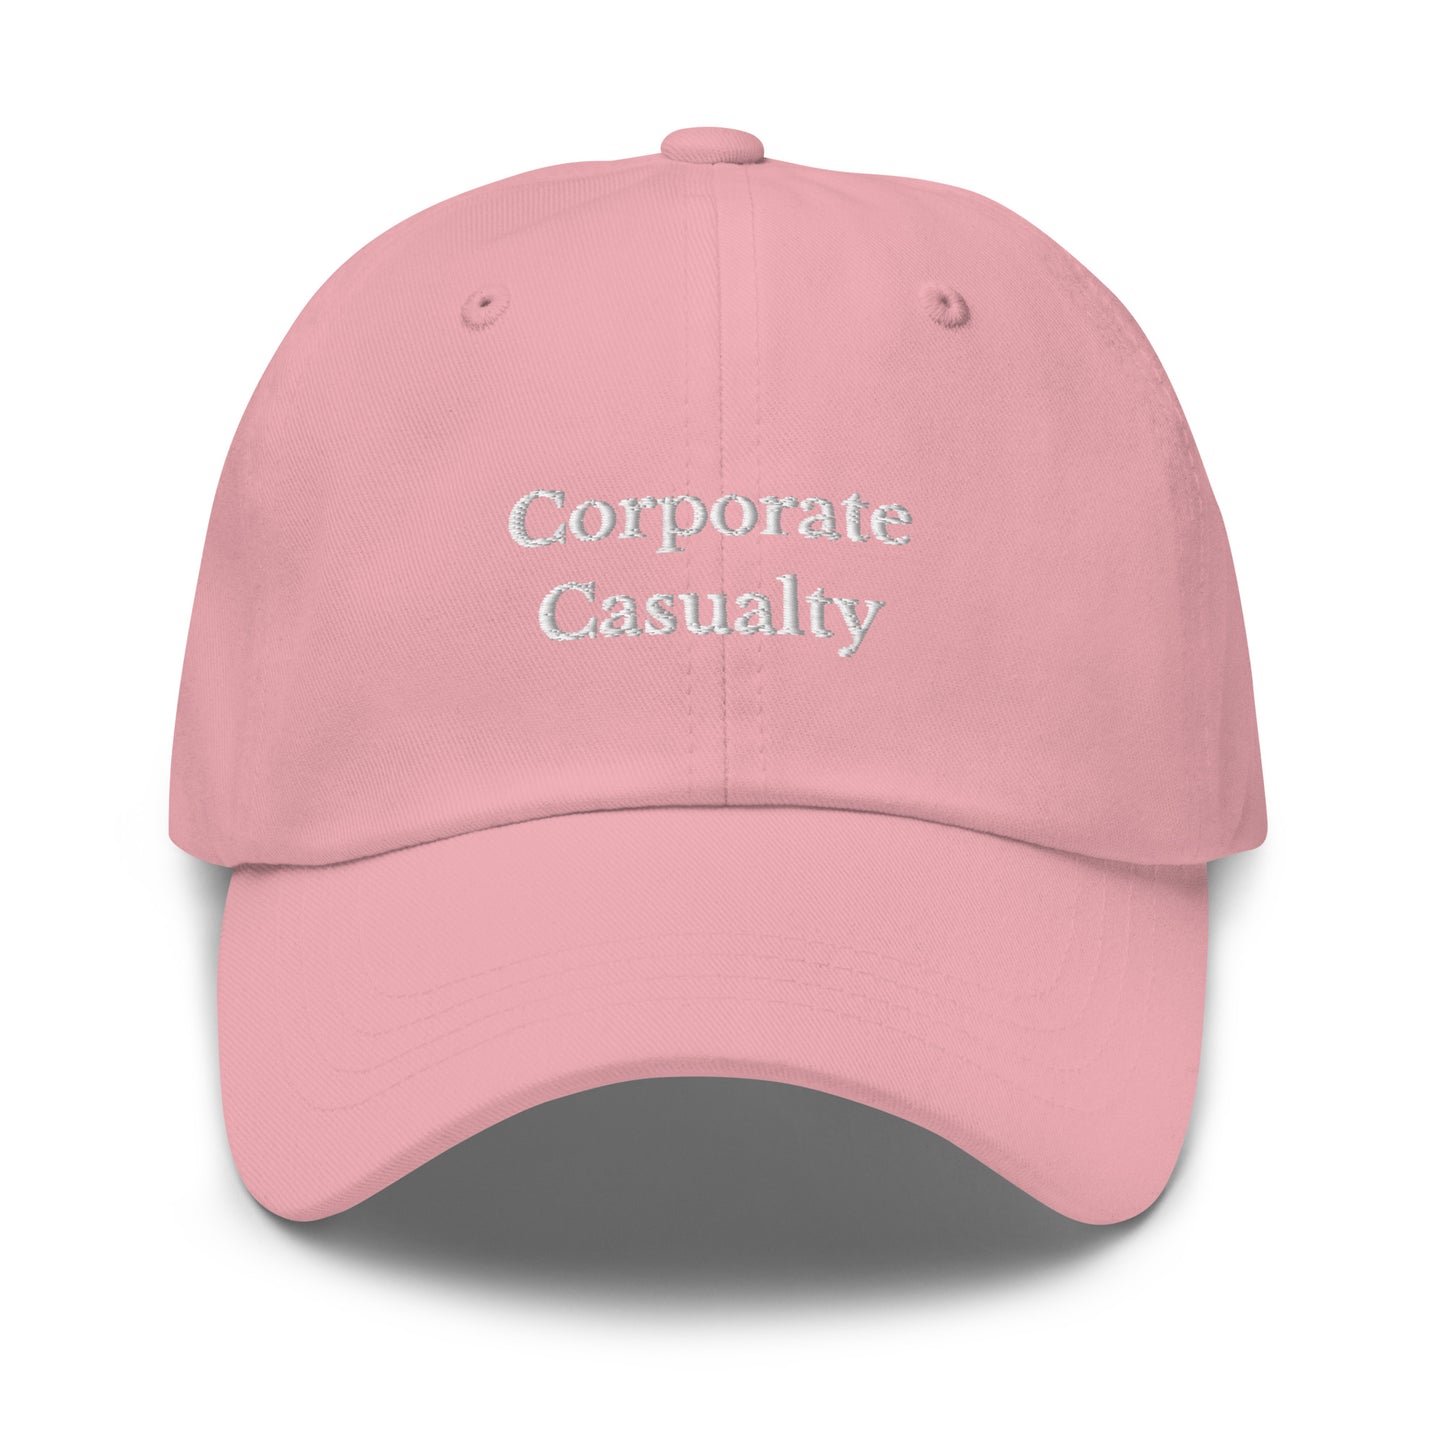 Corporate Casualty Cap